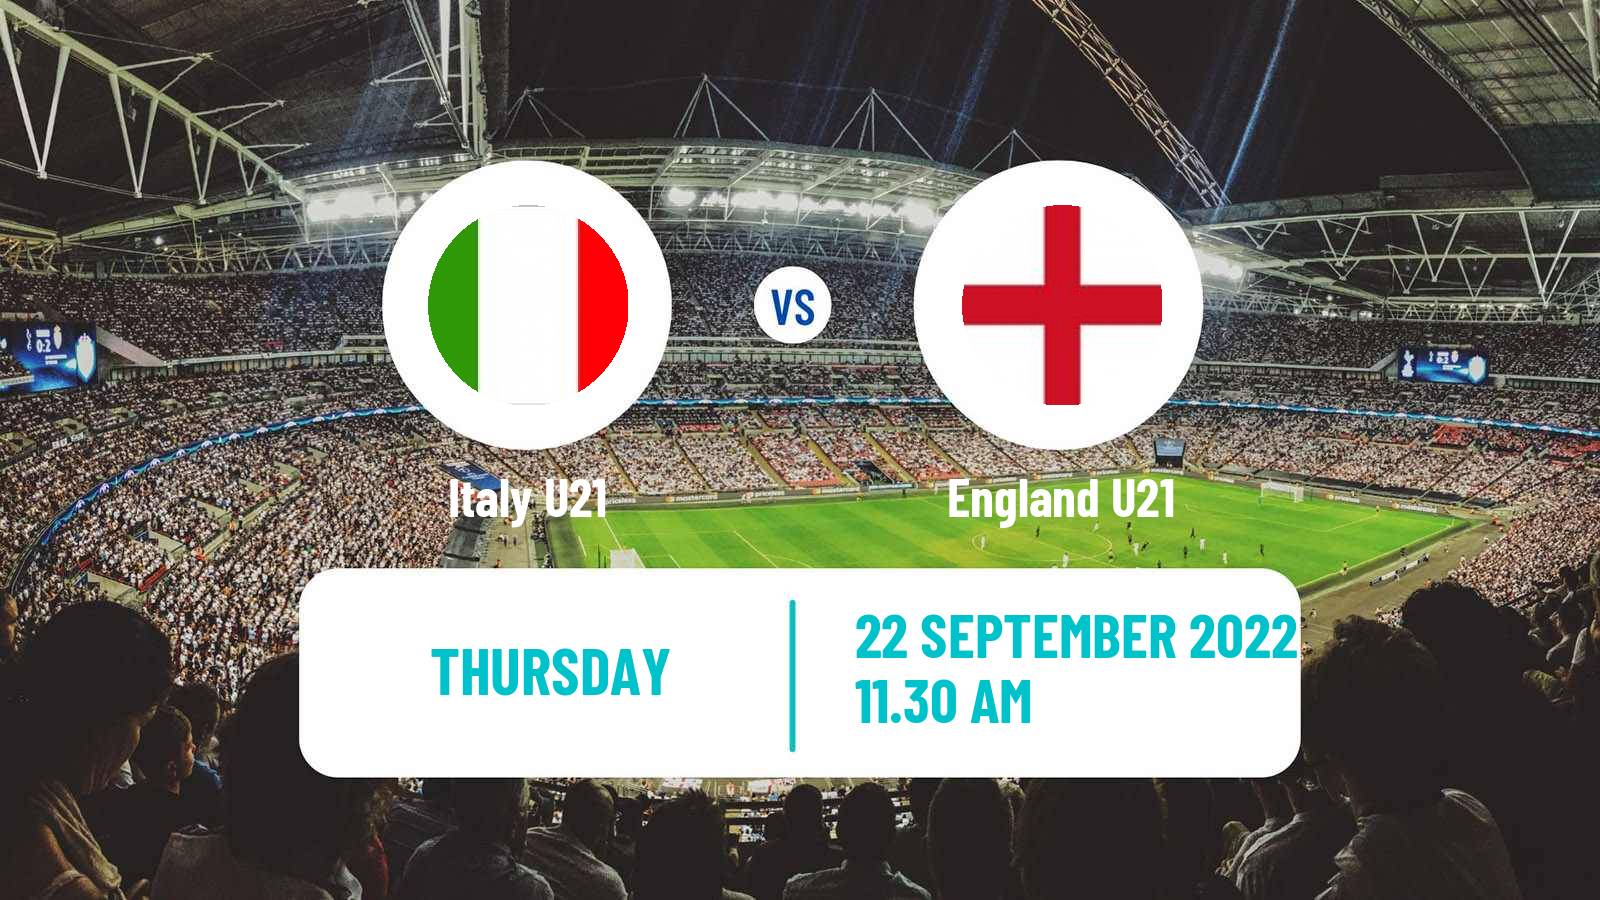 Soccer Friendly Italy U21 - England U21